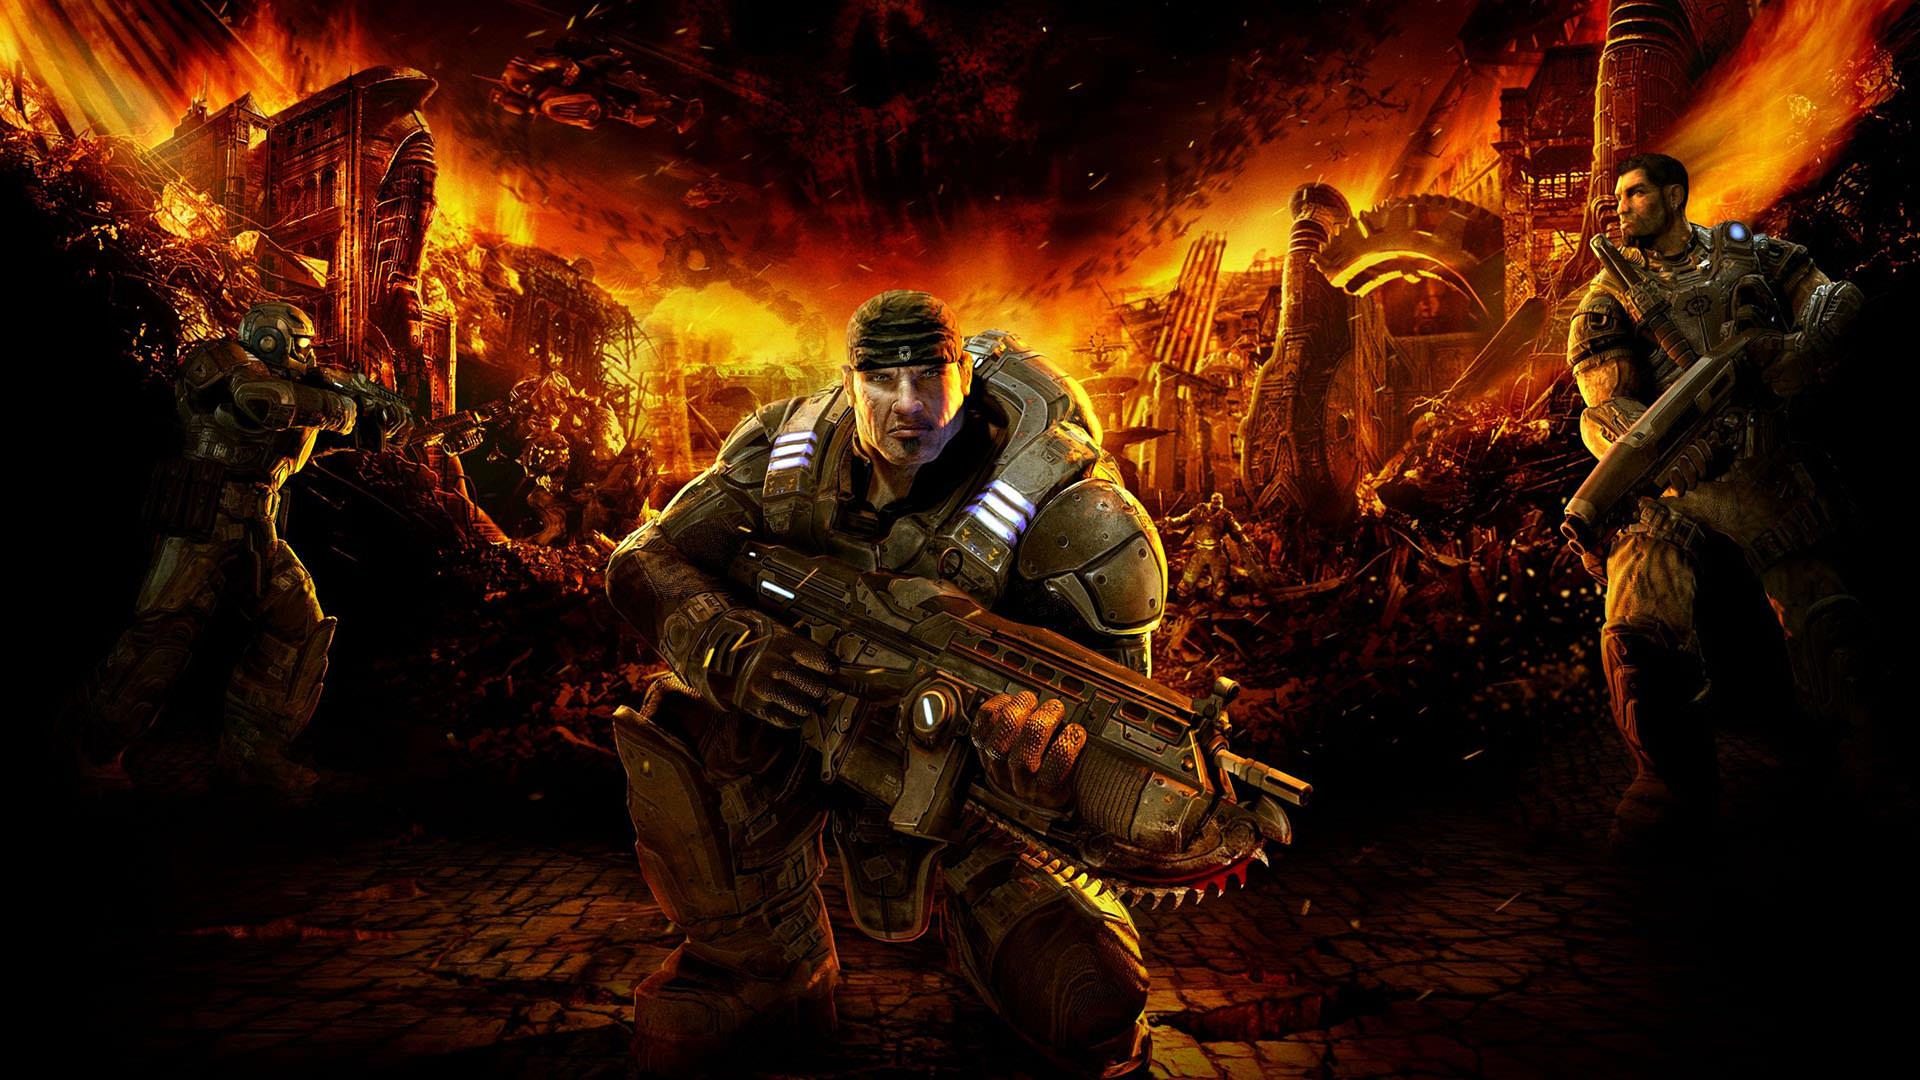 آخر هفته چی بازی کنیم: از Gears of War تا یک نقش آفرینی آخرالزمانی